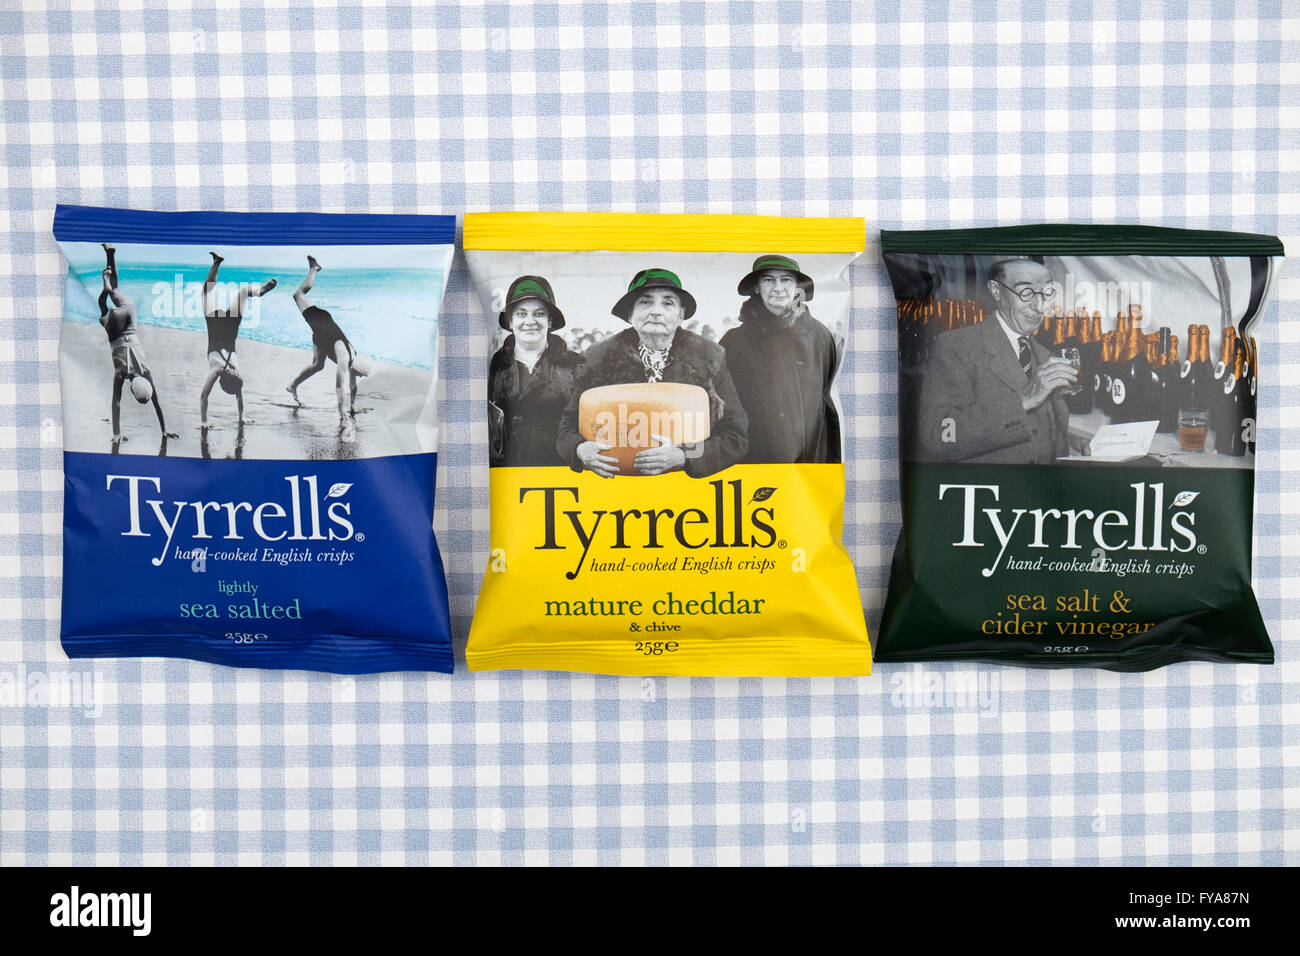 Tyrrells hand-cooked English crisps Stock Photo